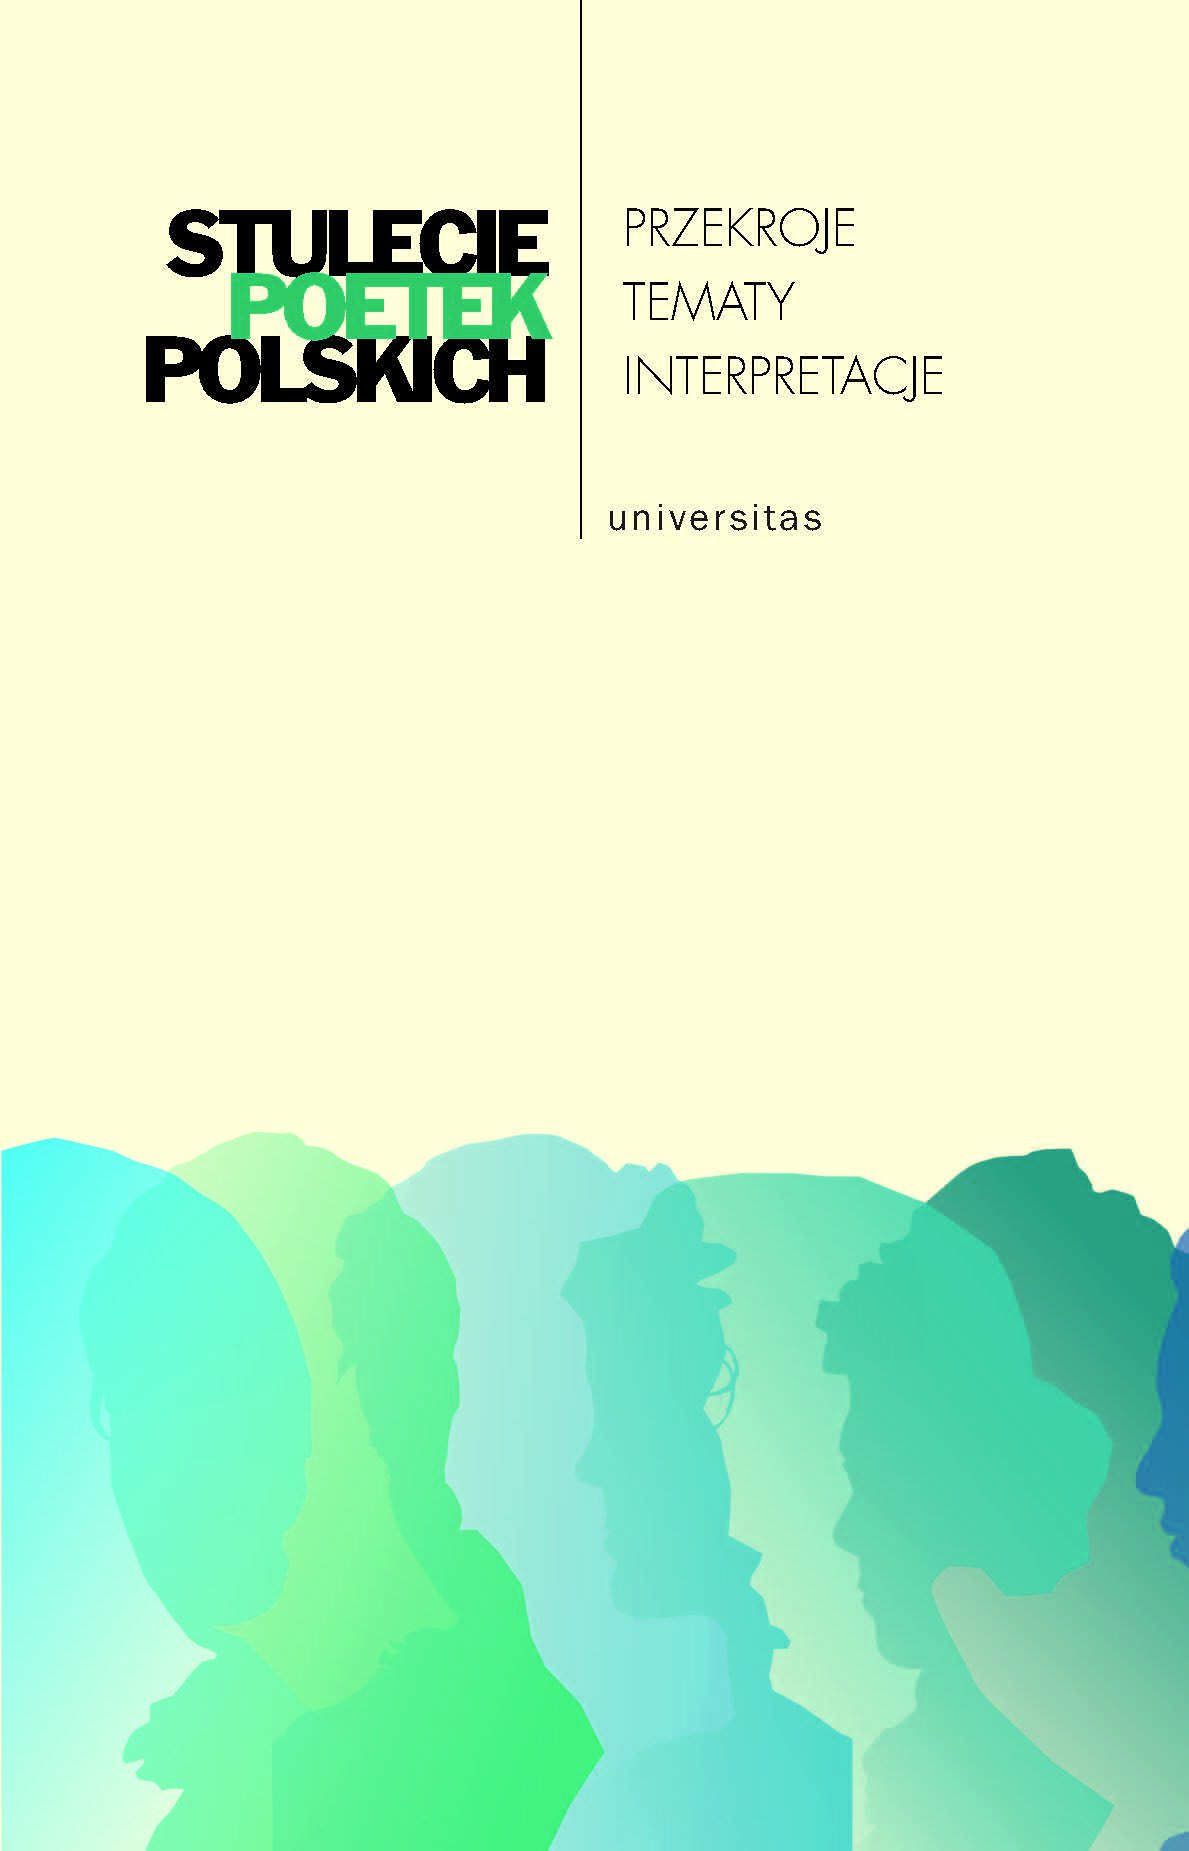 Okładka:Stulecie poetek polskich. Przekroje - tematy - interpretacje 